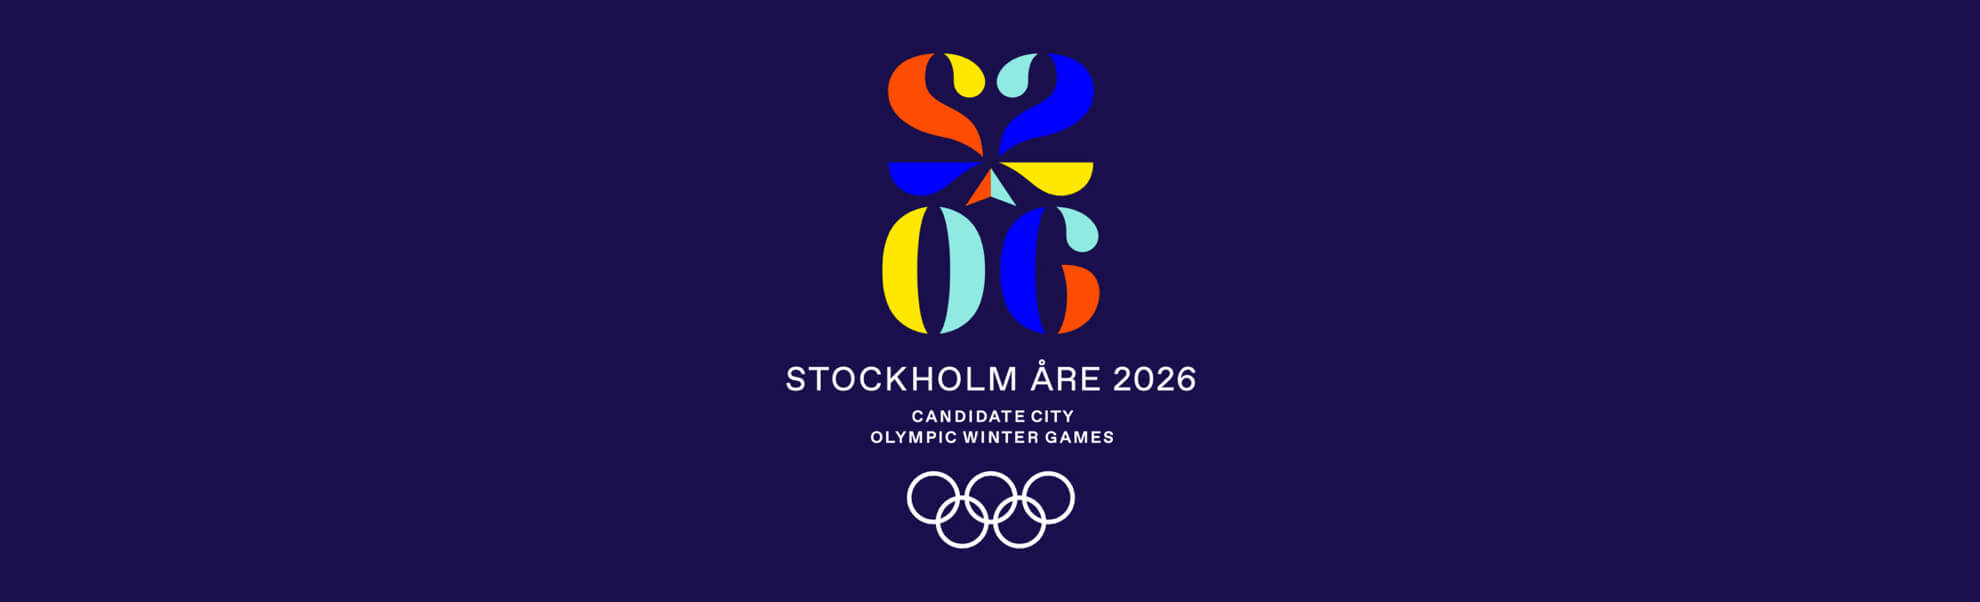 Sztokholm i Åre mają kandydackie logo